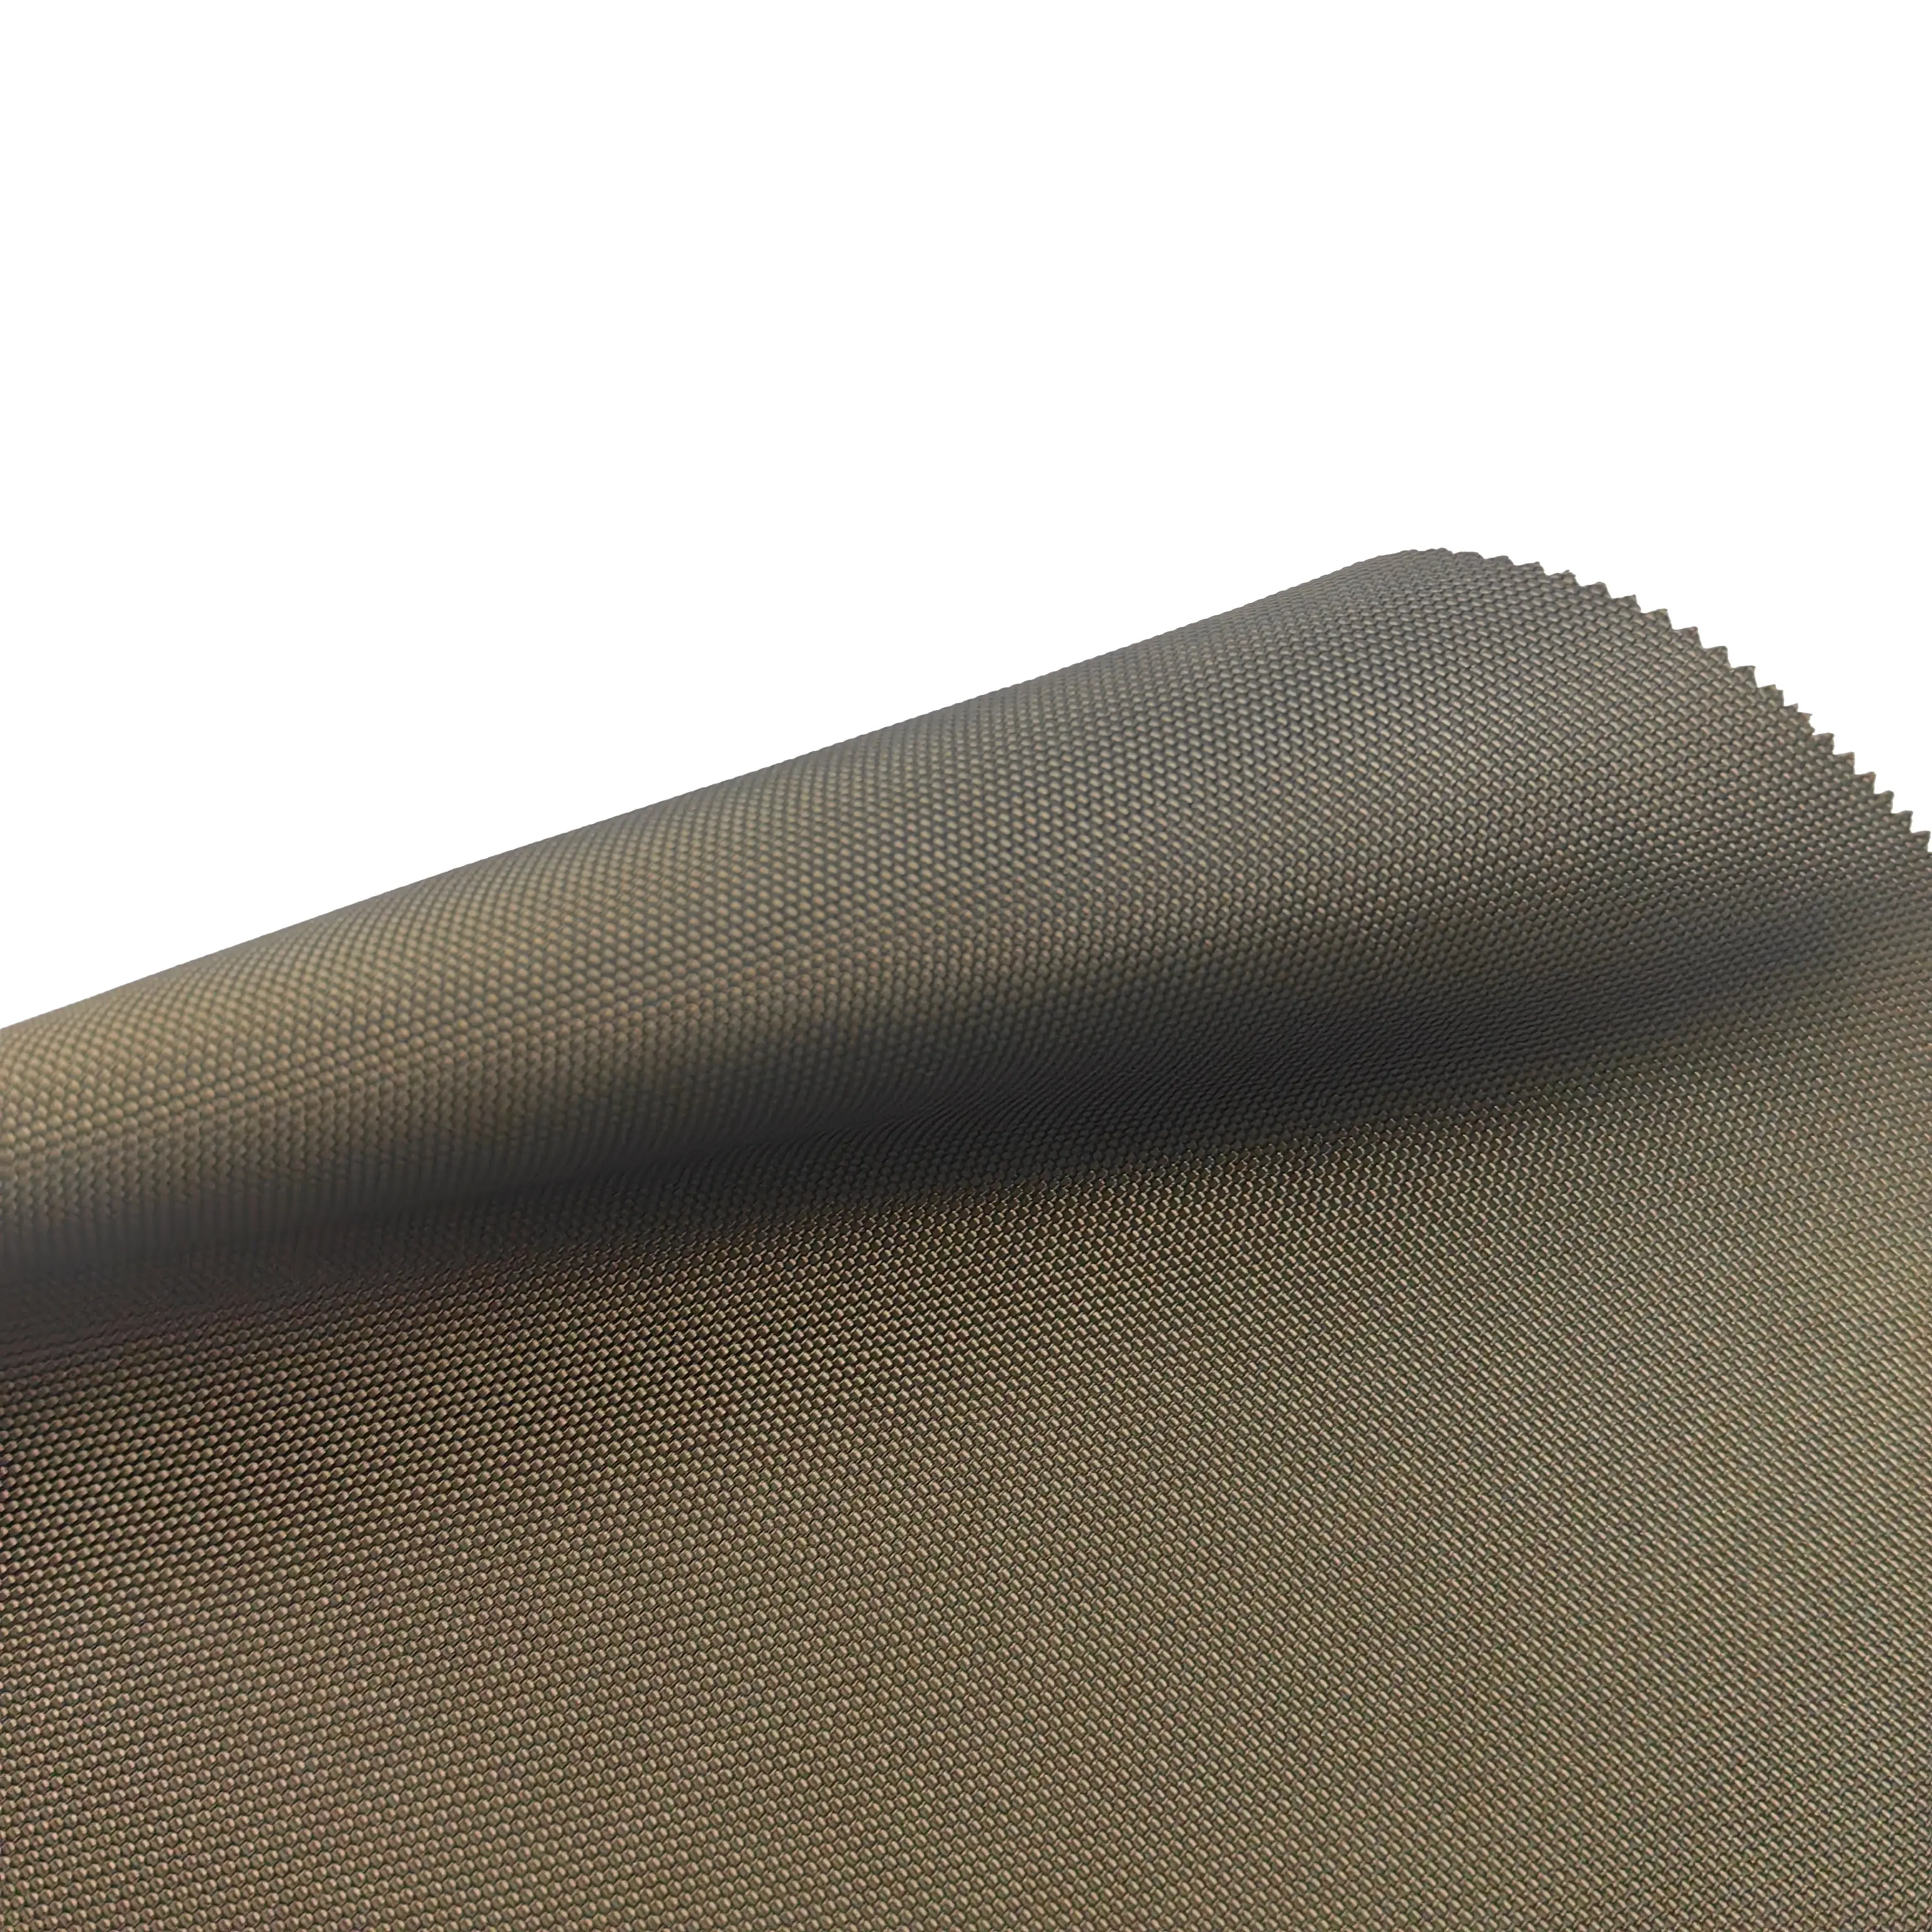 Tela Oxford de nailon 420D resistente a la abrasión, recubierta de tela impermeable para bolsa PU, cubierta de tienda, manta para exteriores